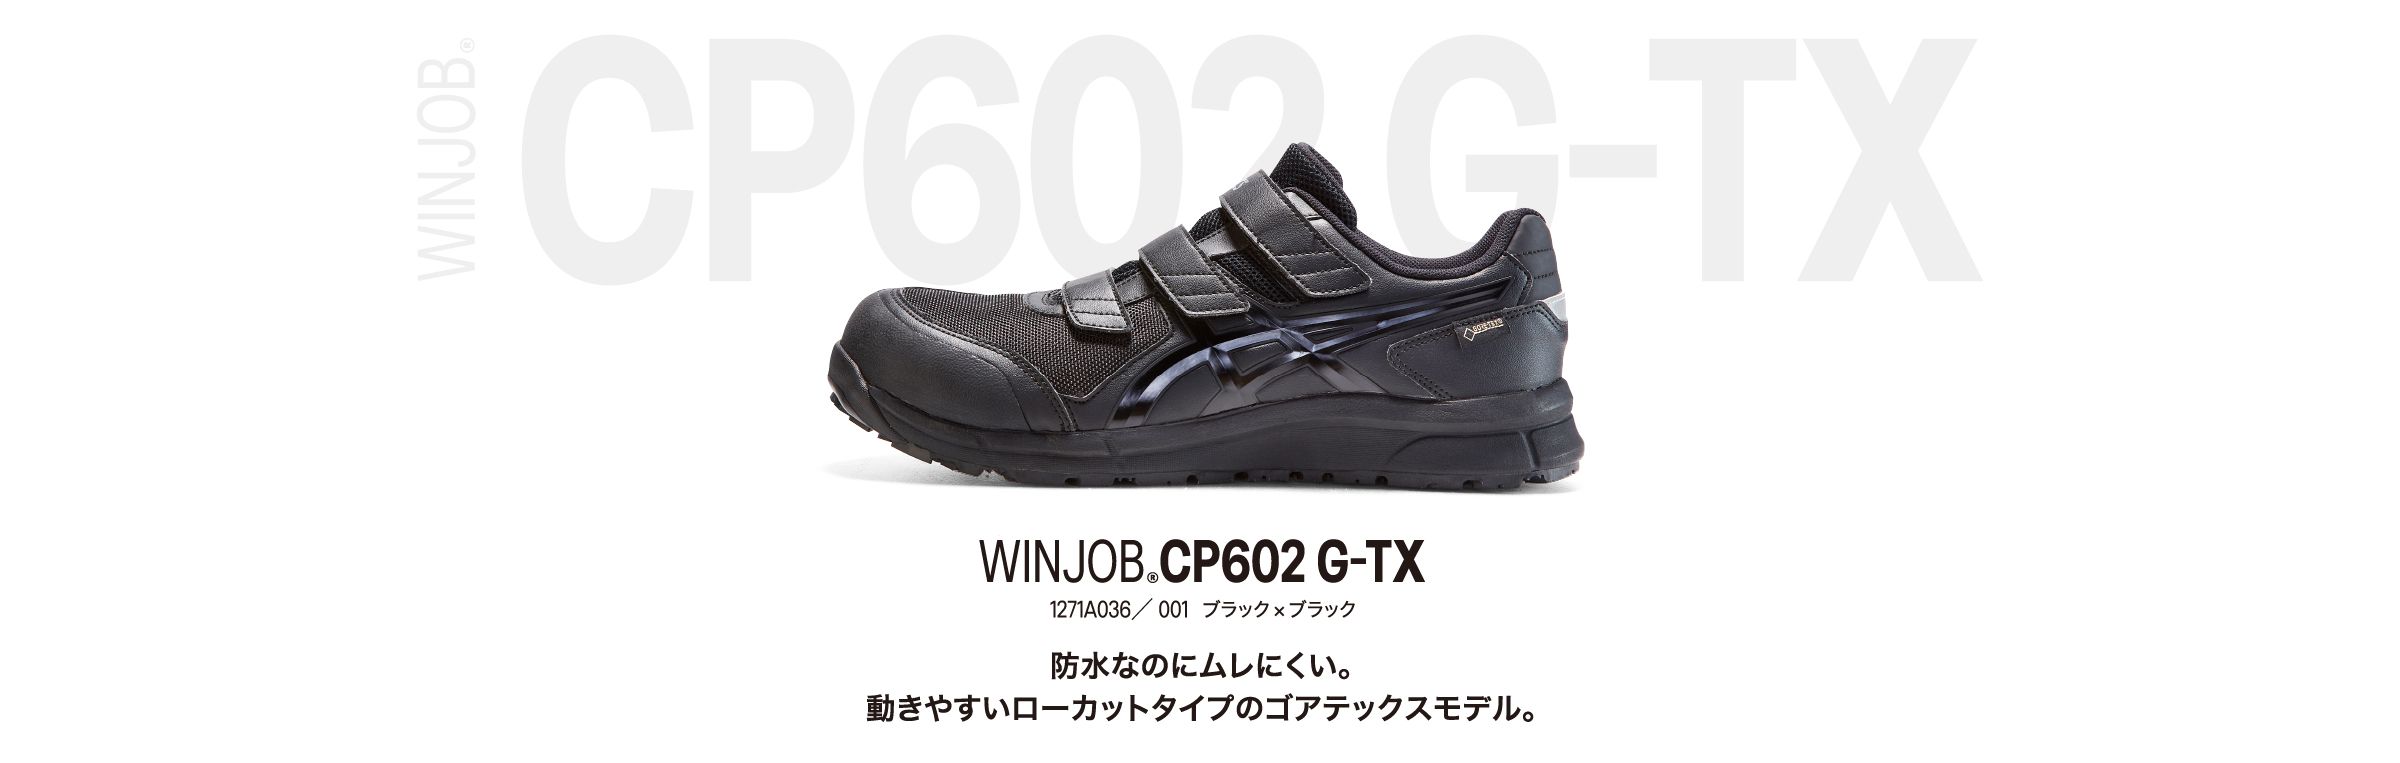 WINJOB®CP602 G-TX 1271A036／ 001 ブラック×ブラック 防水なのにムレにくい。 動きやすいローカットタイプのゴアテックスモデル。